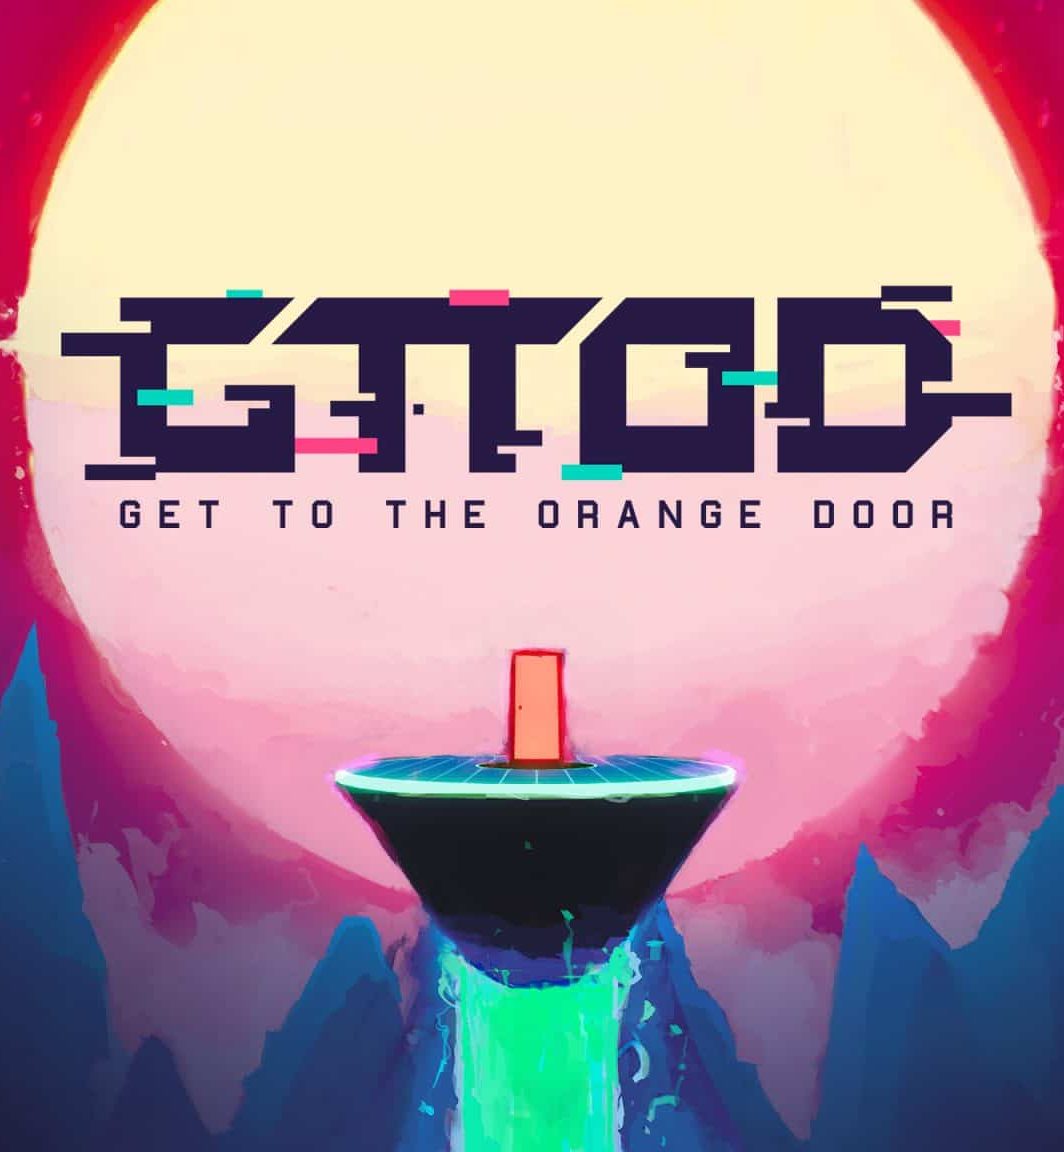 GTTOD: Get To The Orange Door